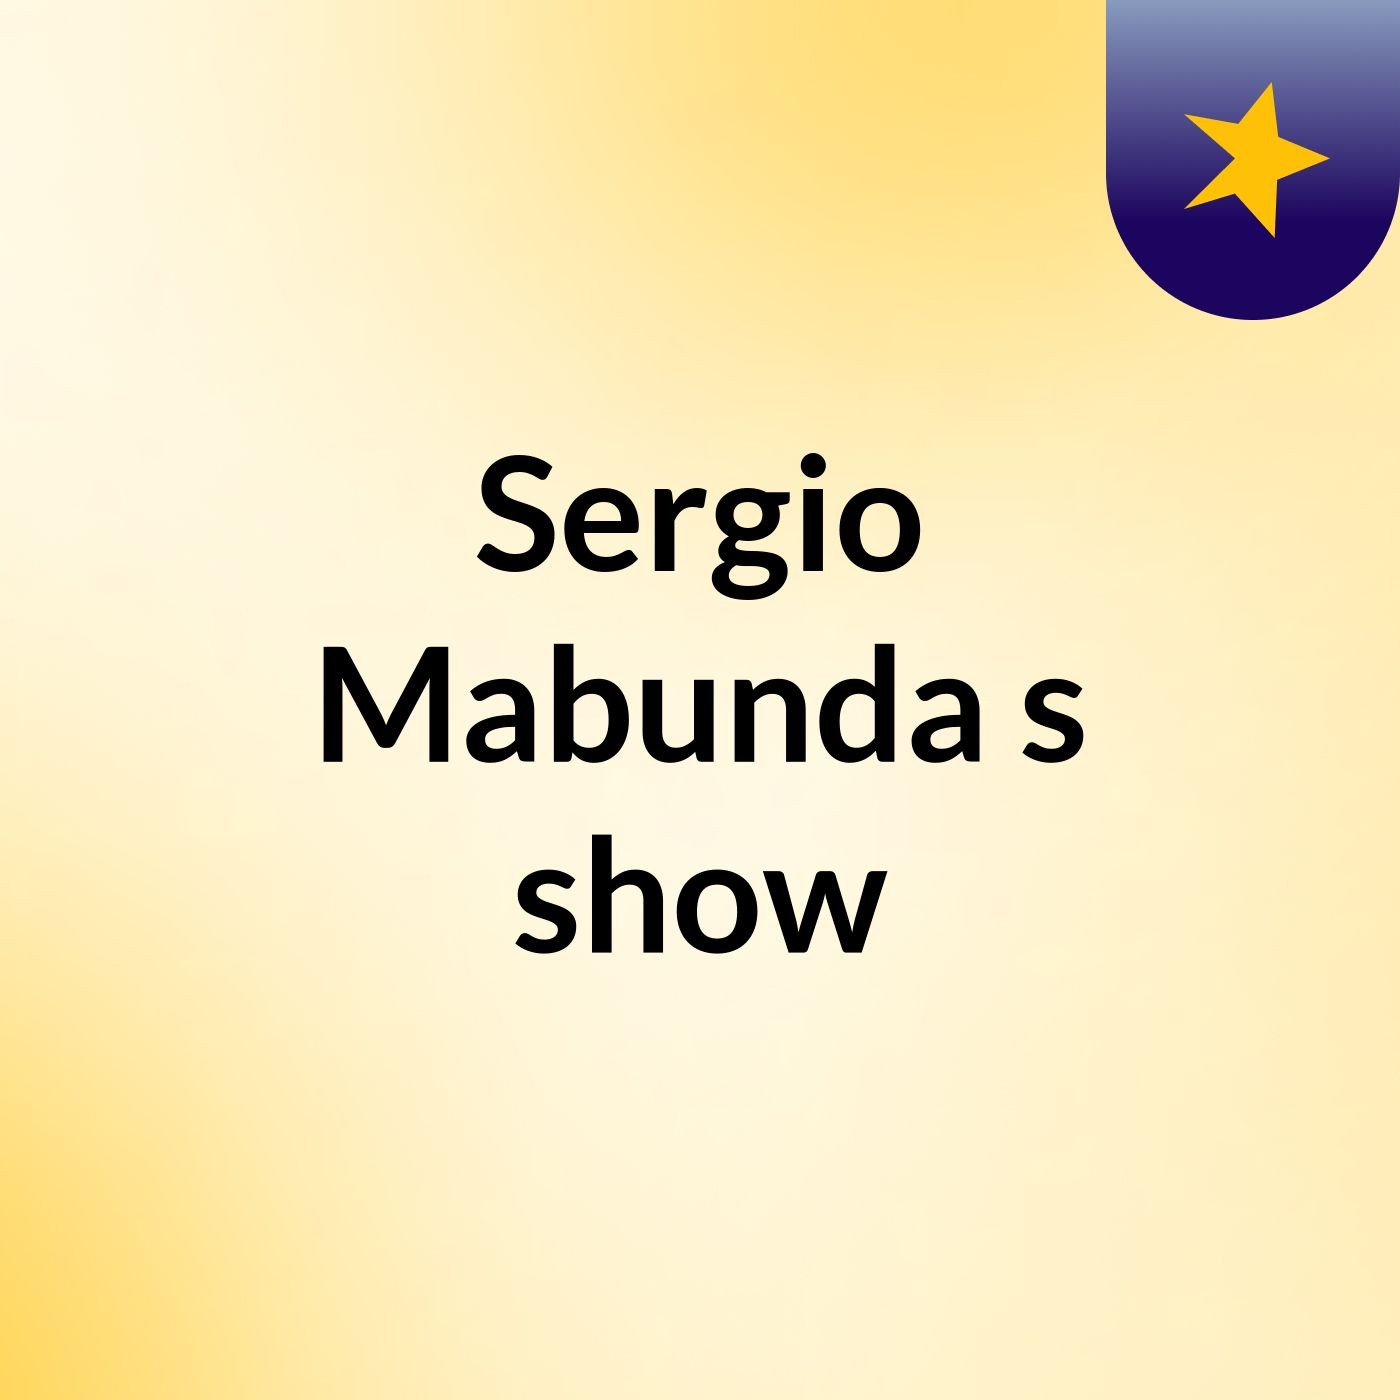 Sergio Mabunda's show